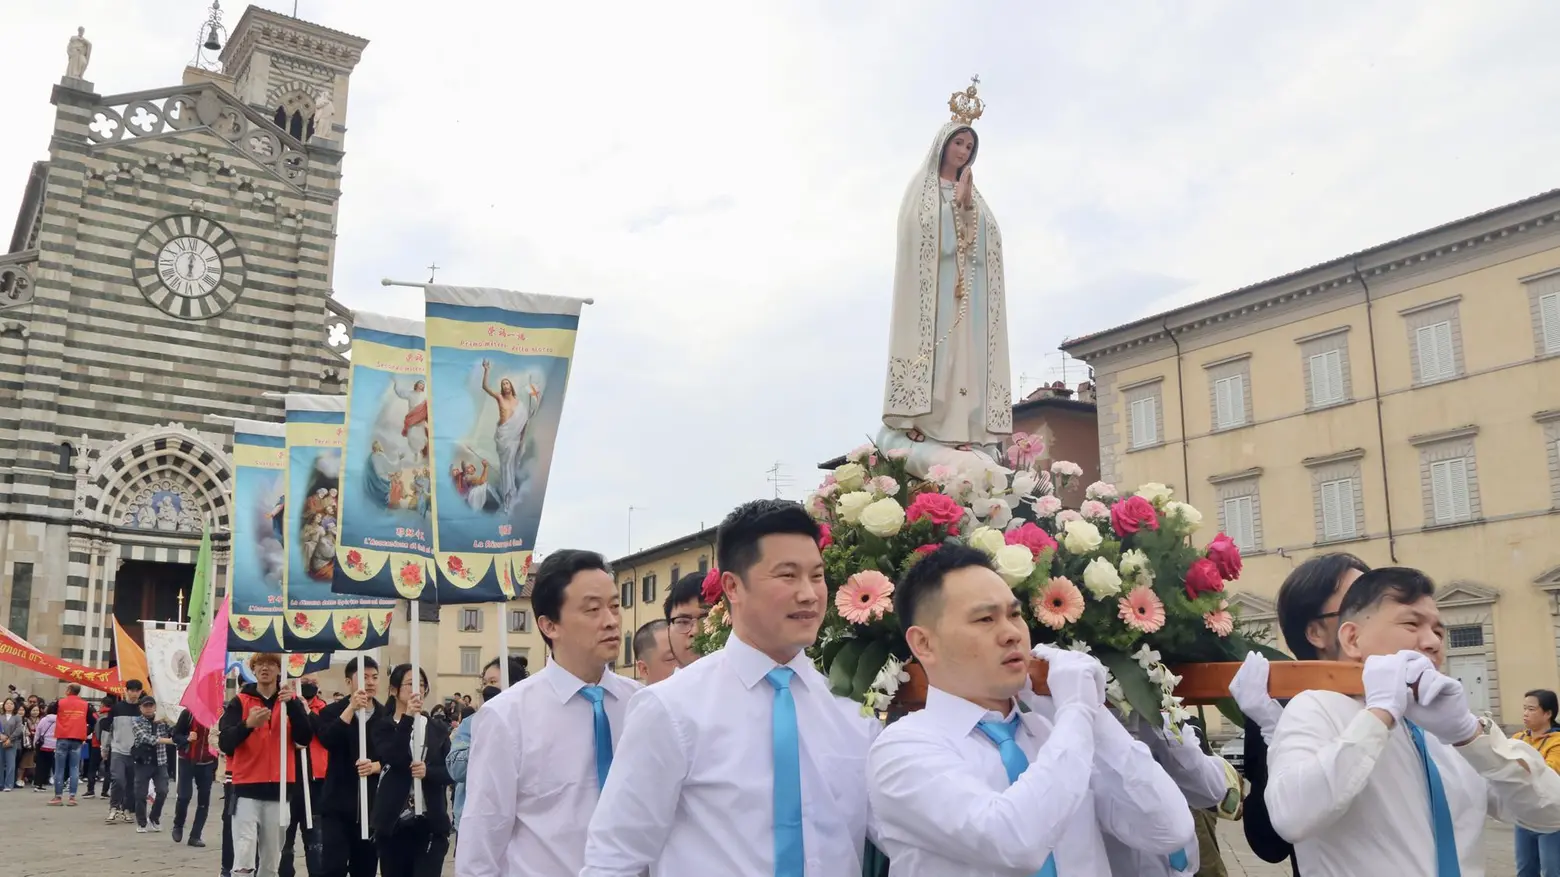 Cinesi cattolici,  il raduno a Prato  e la processione